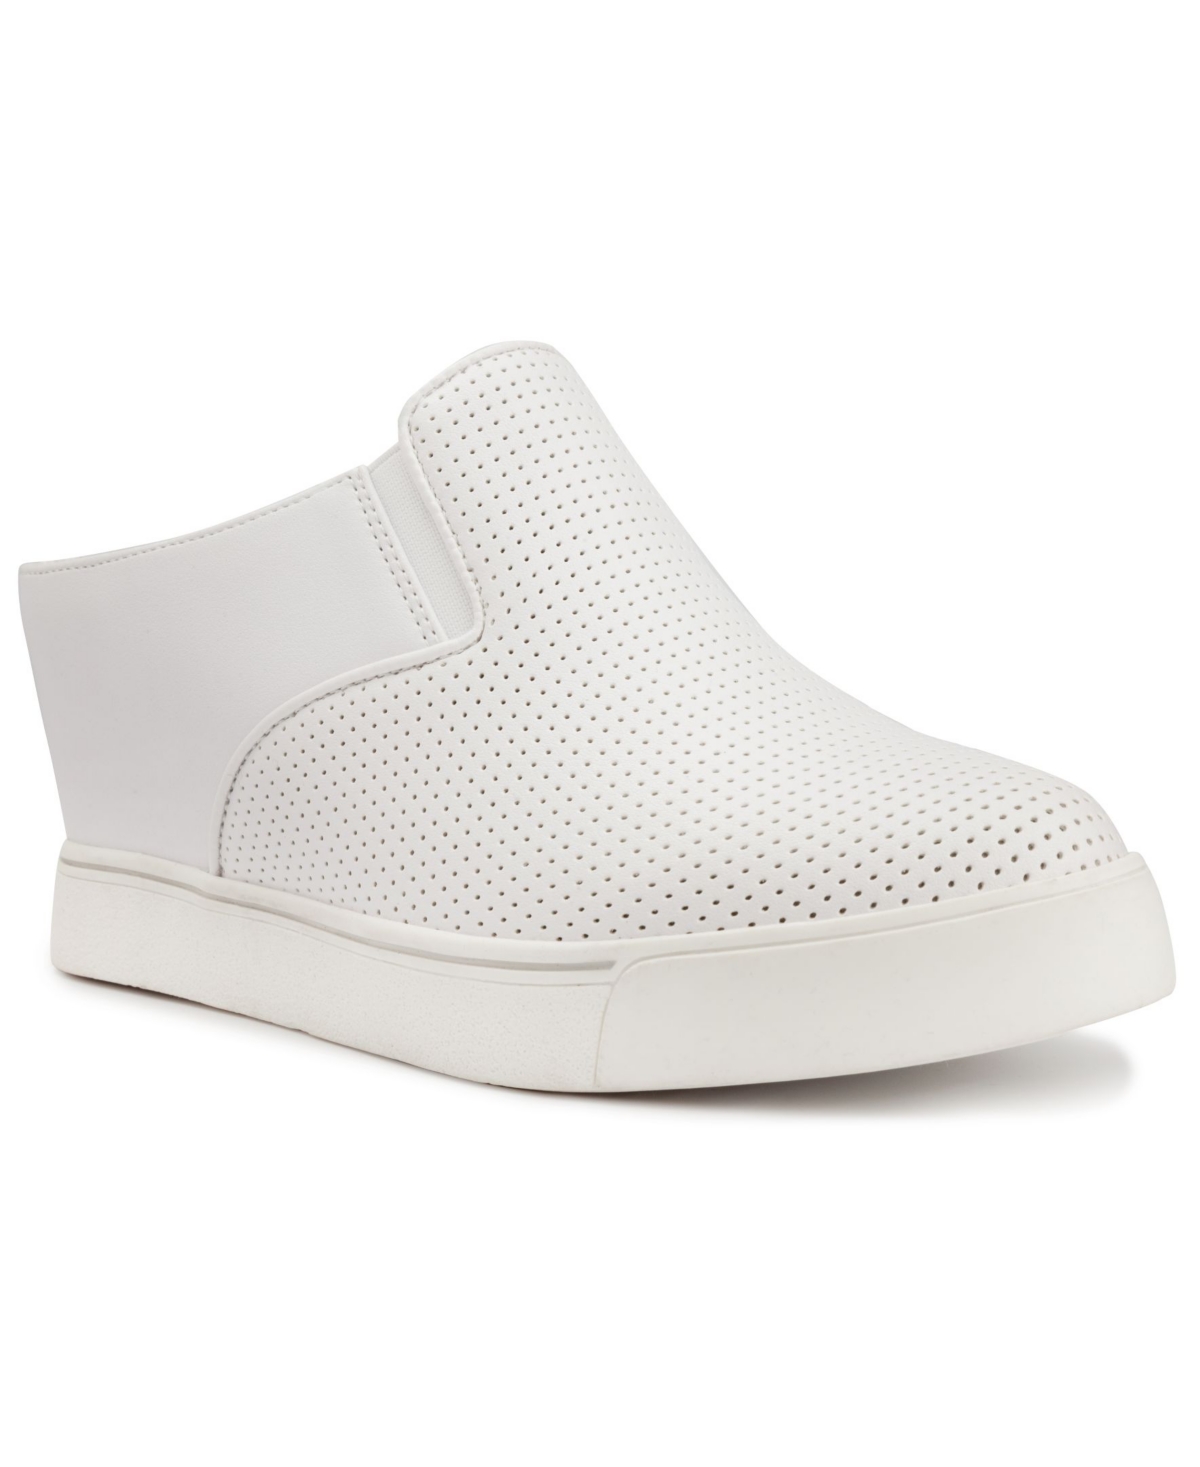 Women's Kallie Slip-On Wedge Sneakers - White